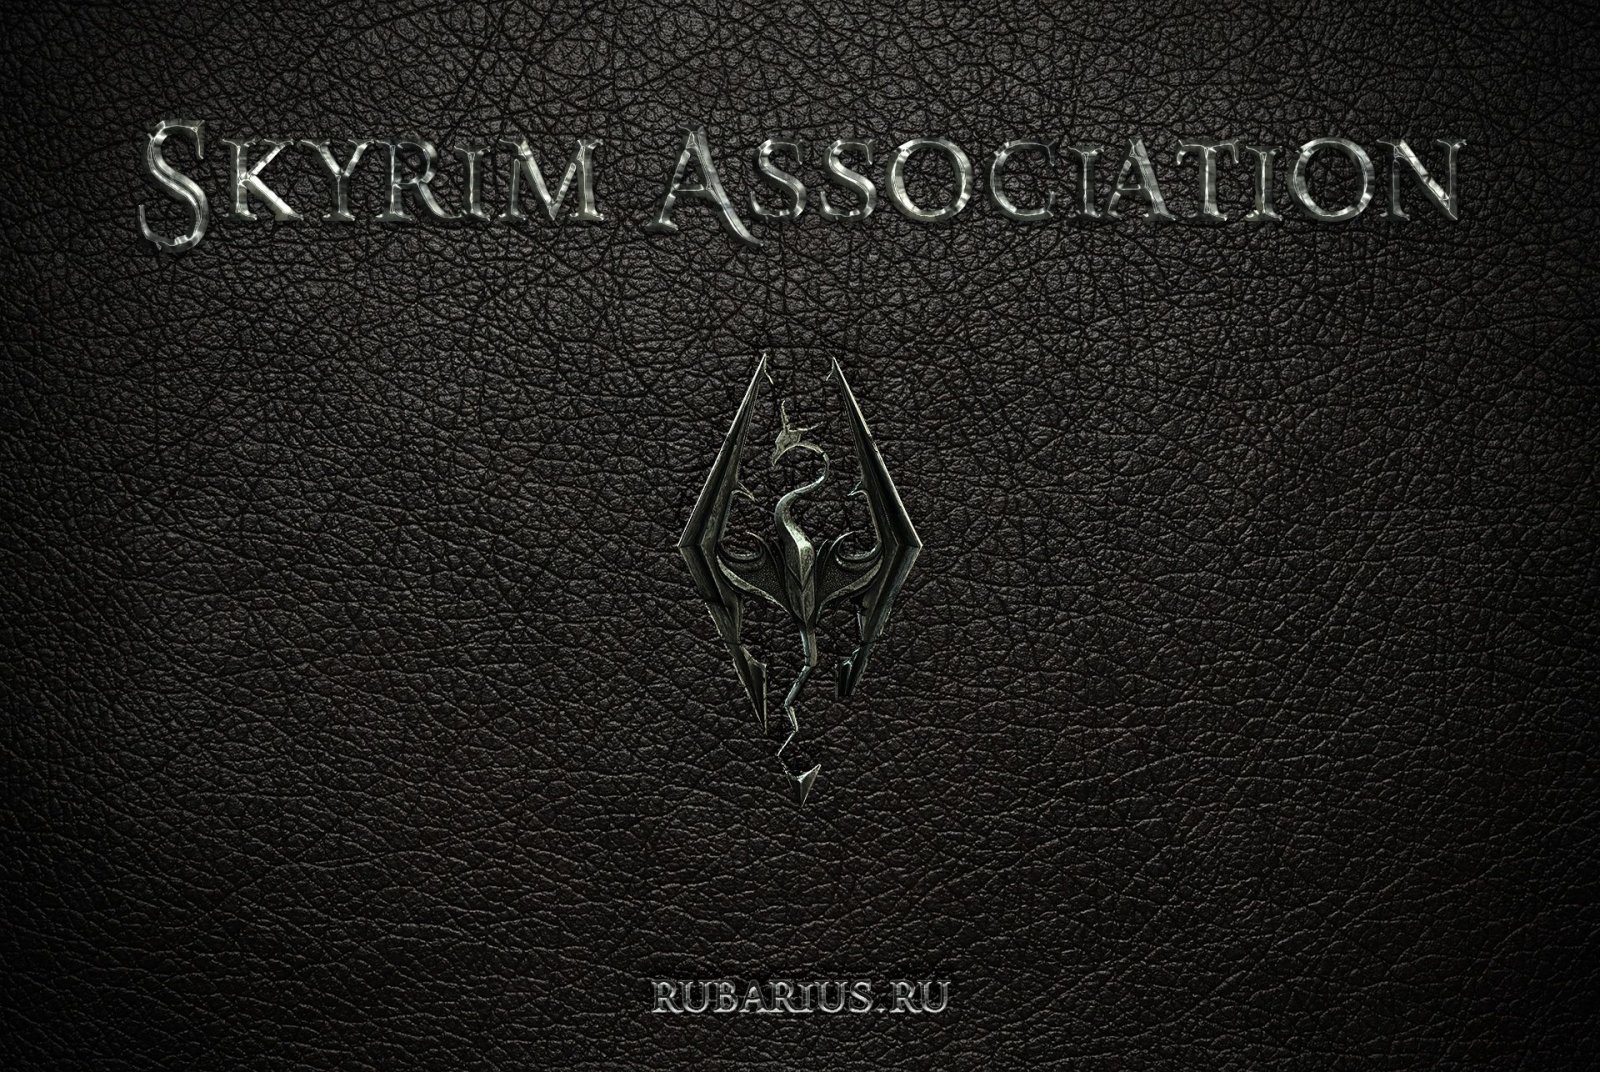 Skyrim Association